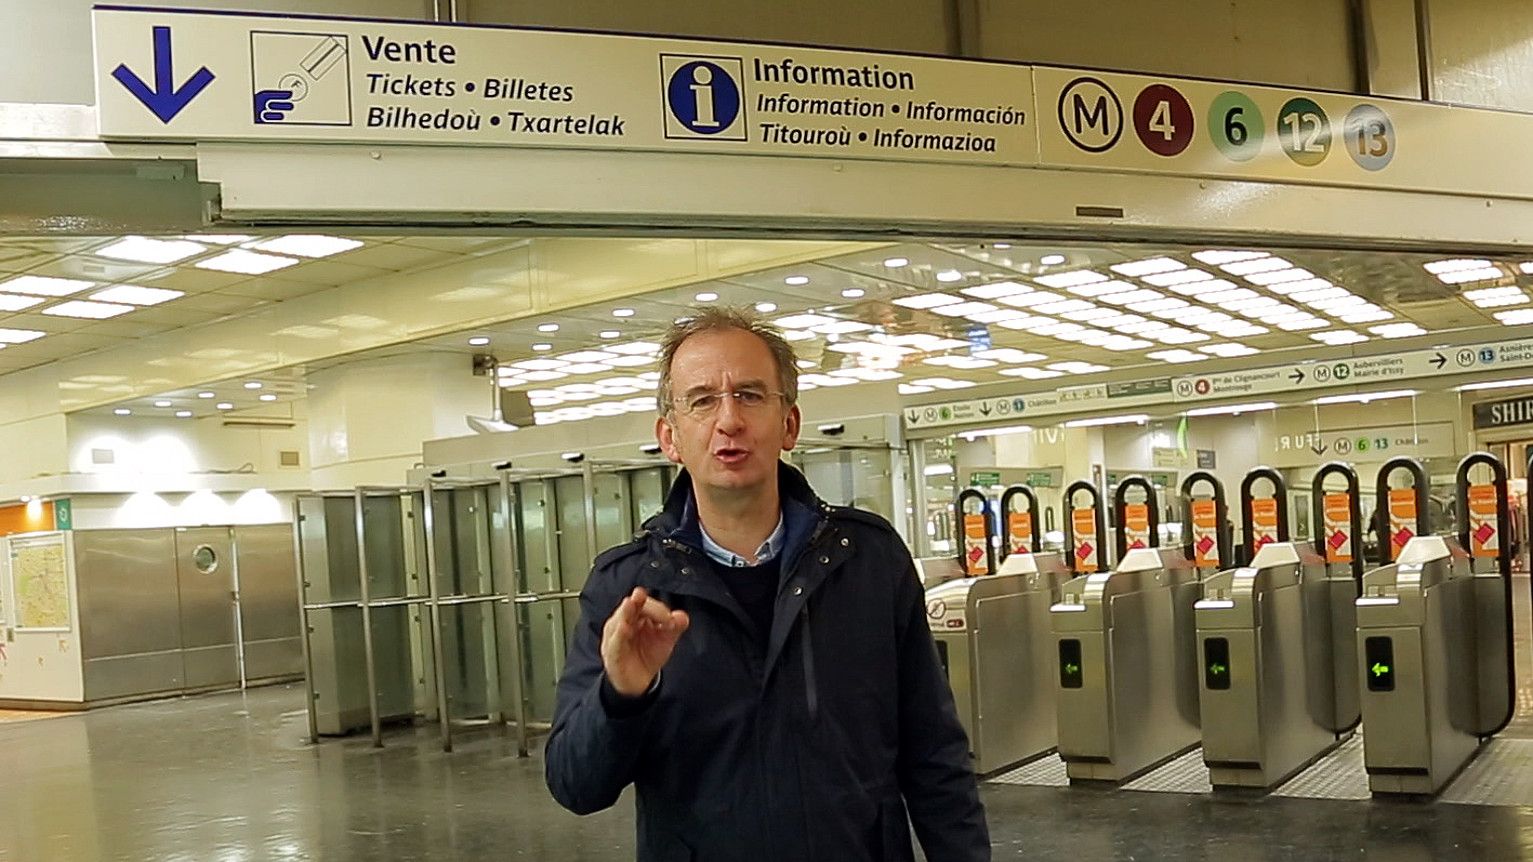 Kike Amonarriz Tribuaren Berbak saioko zuzendari eta aurkezlea, Parisko metro geltoki batean. Euskara ere erabili dute hango zeinuetan. ETB.